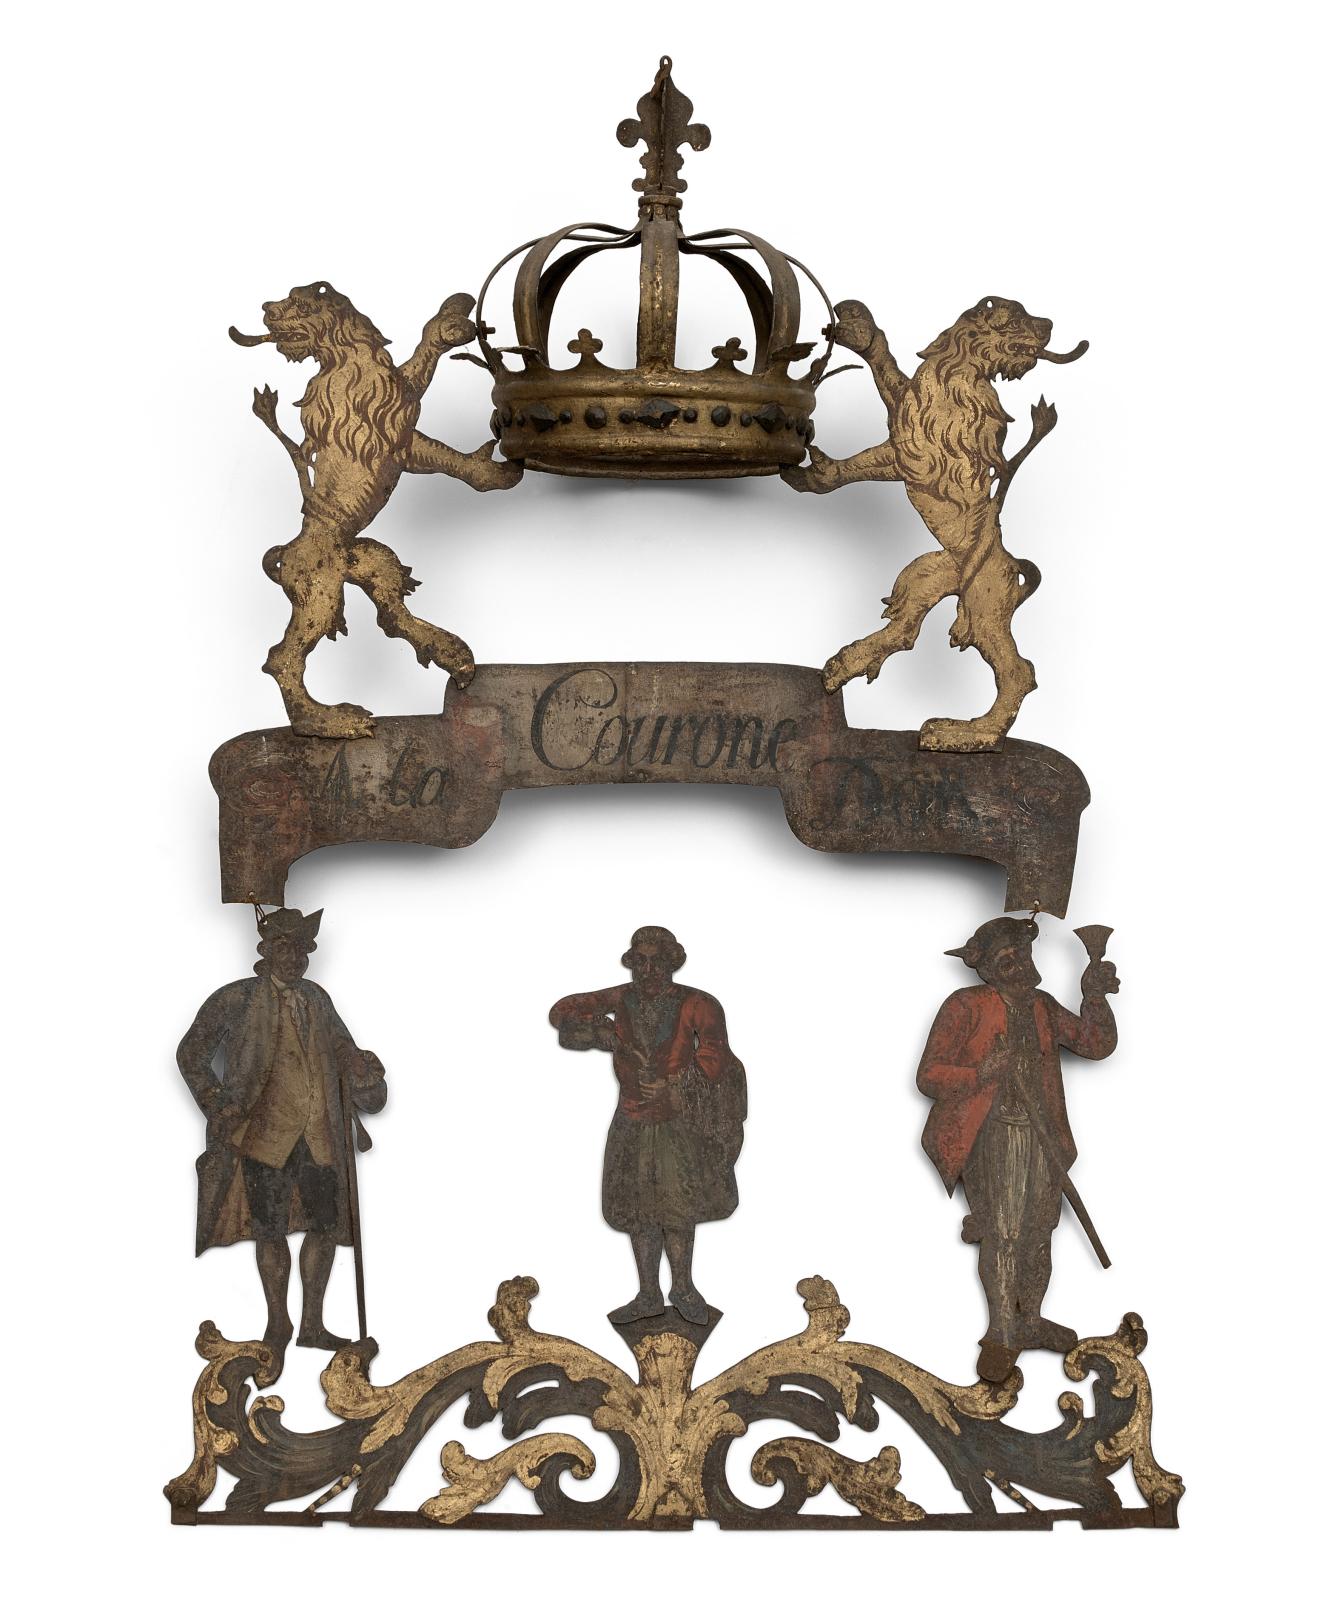 1 264 € Suisse, XVIIIe siècle. Enseigne d’aubergiste «À la couronne d’or», 120 x 94,5 cm. Drouot, 10 mai 2017. Ferri & Associés OVV.